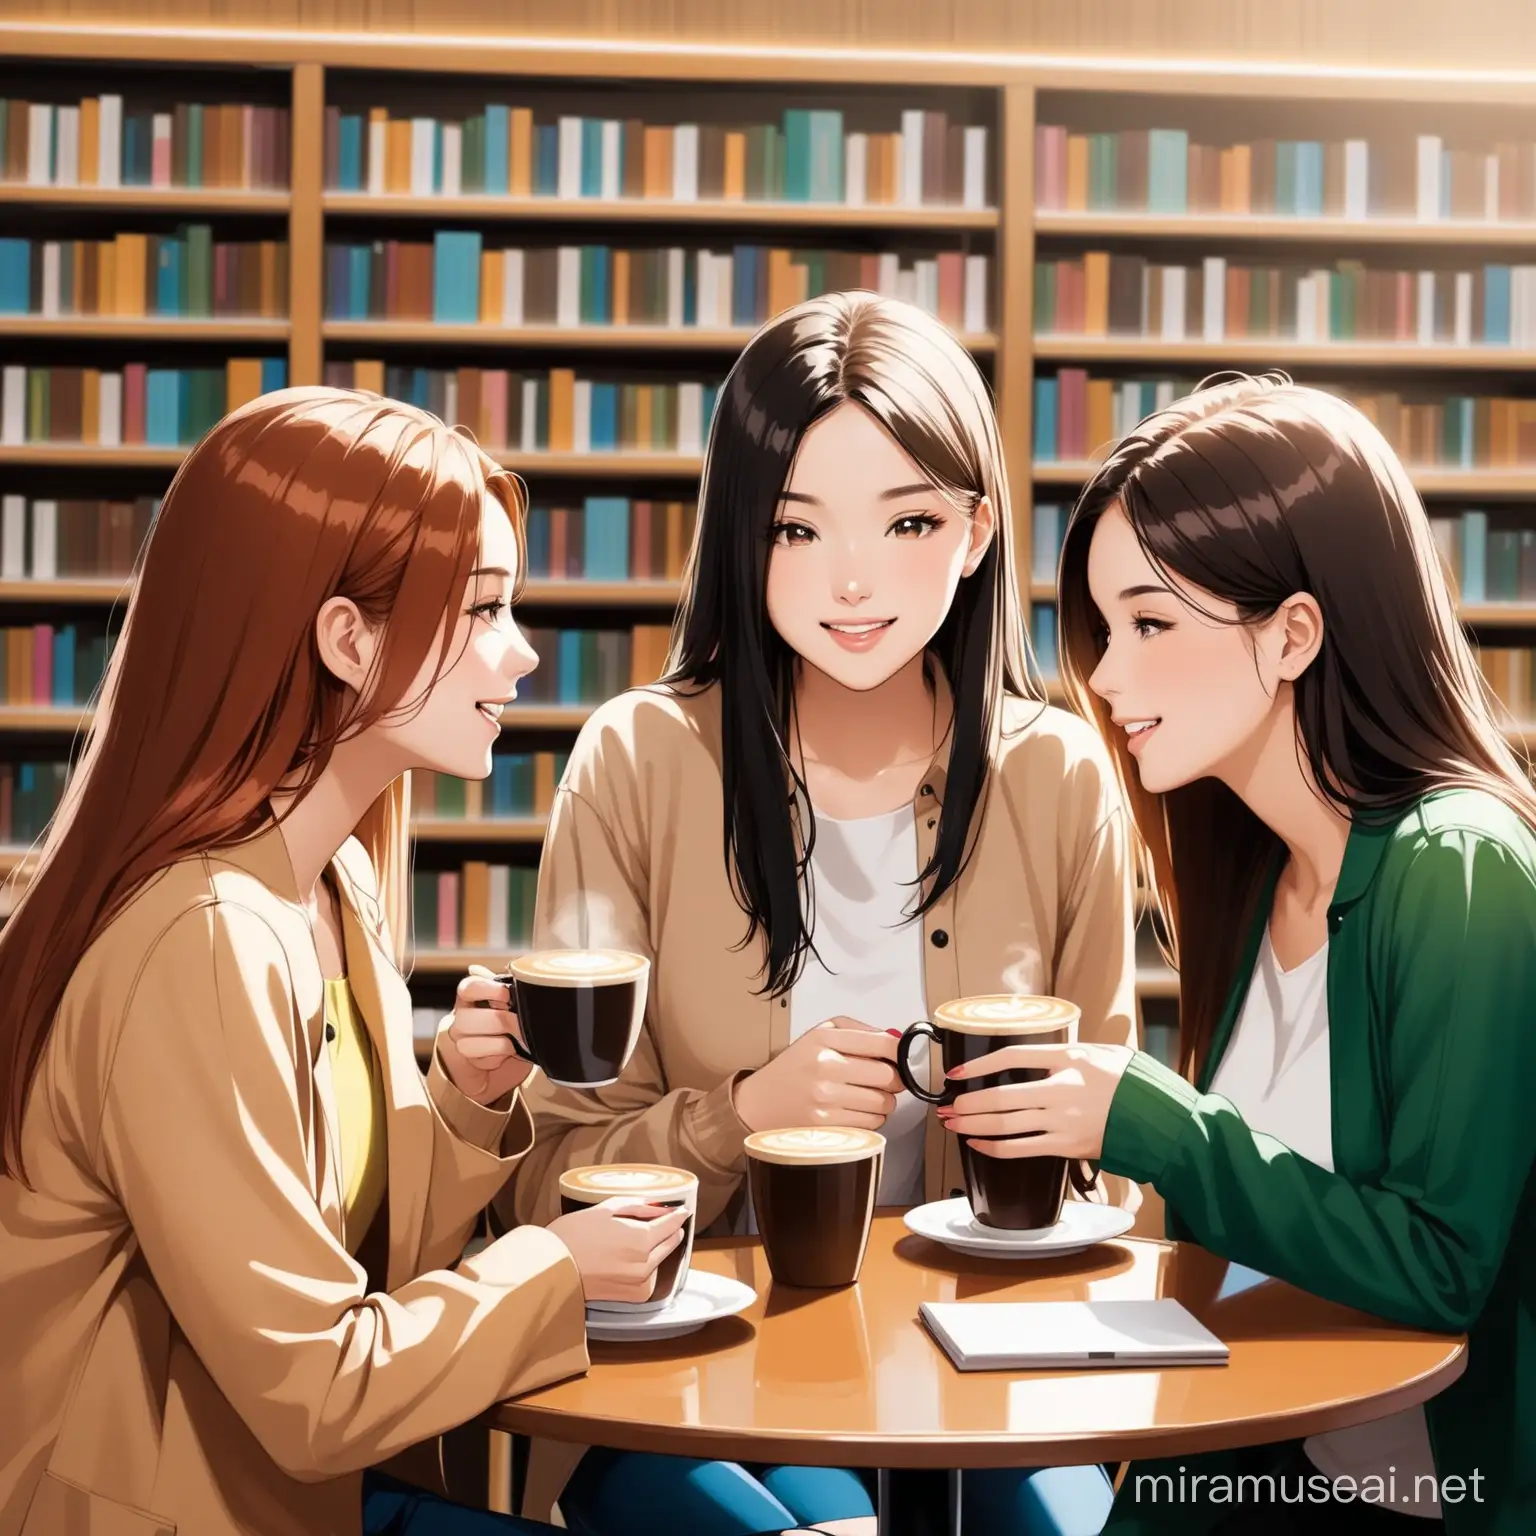 Three Female Friends Enjoying Coffee in a Cozy Library Setting